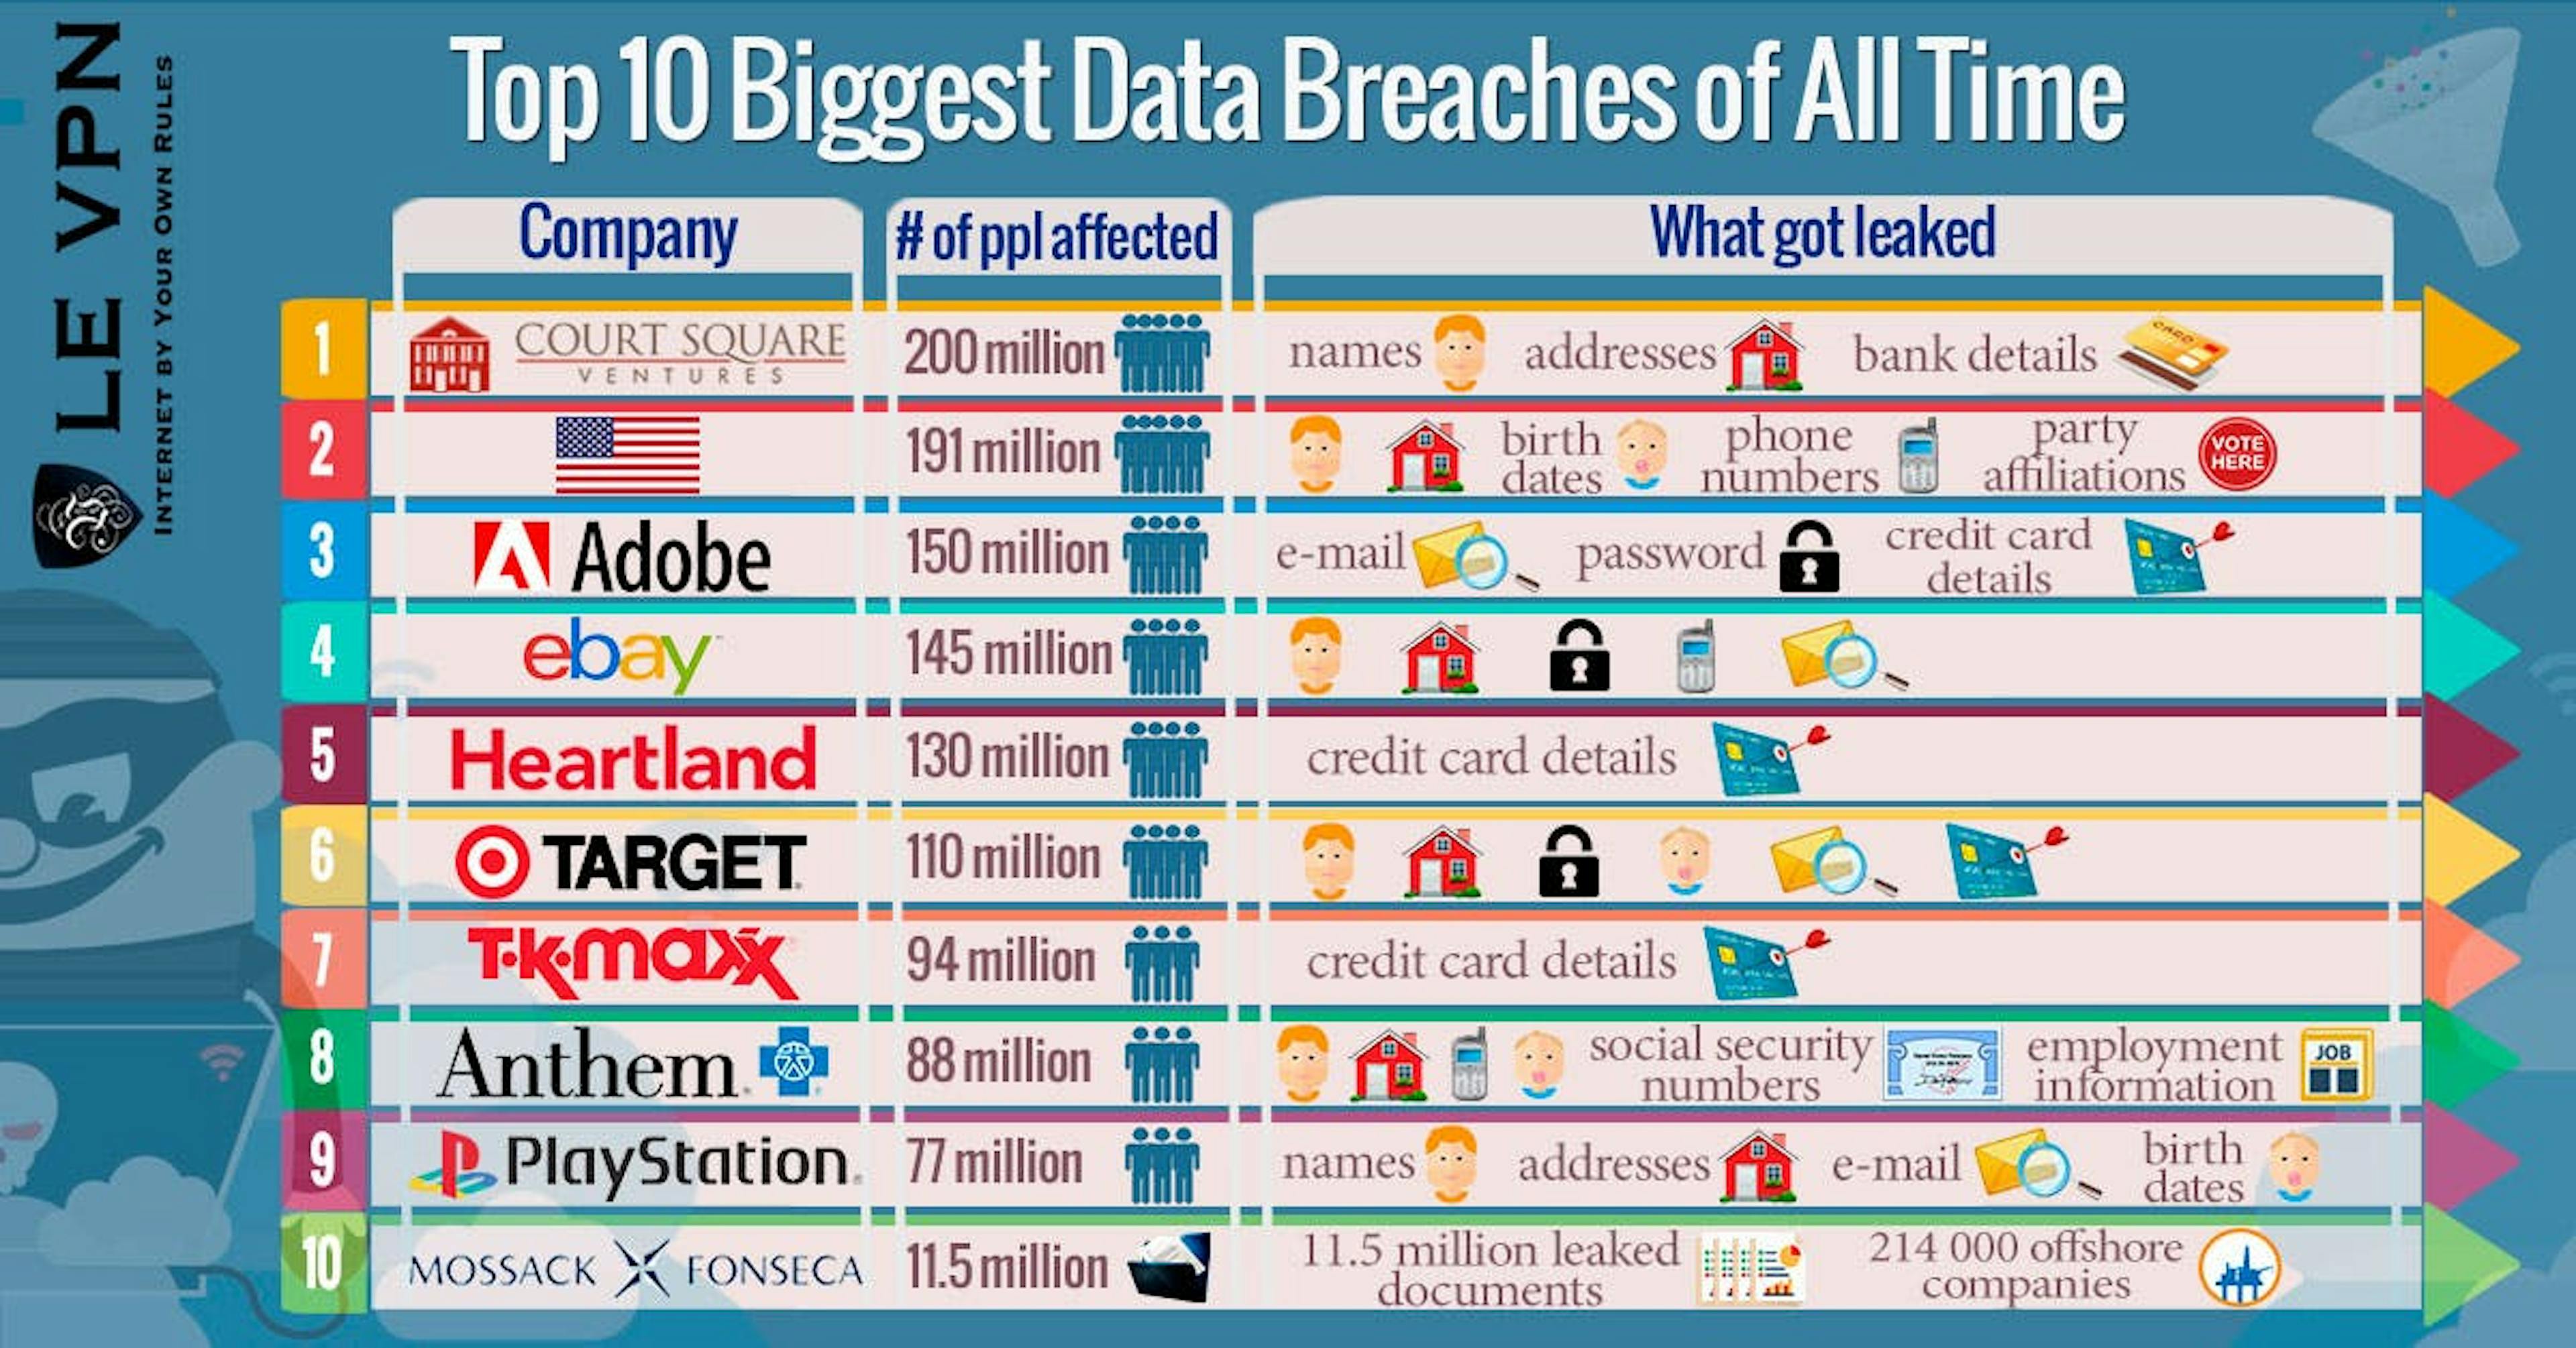  Data centers are susceptible to malicious attacks. Source: Le-vpn.com